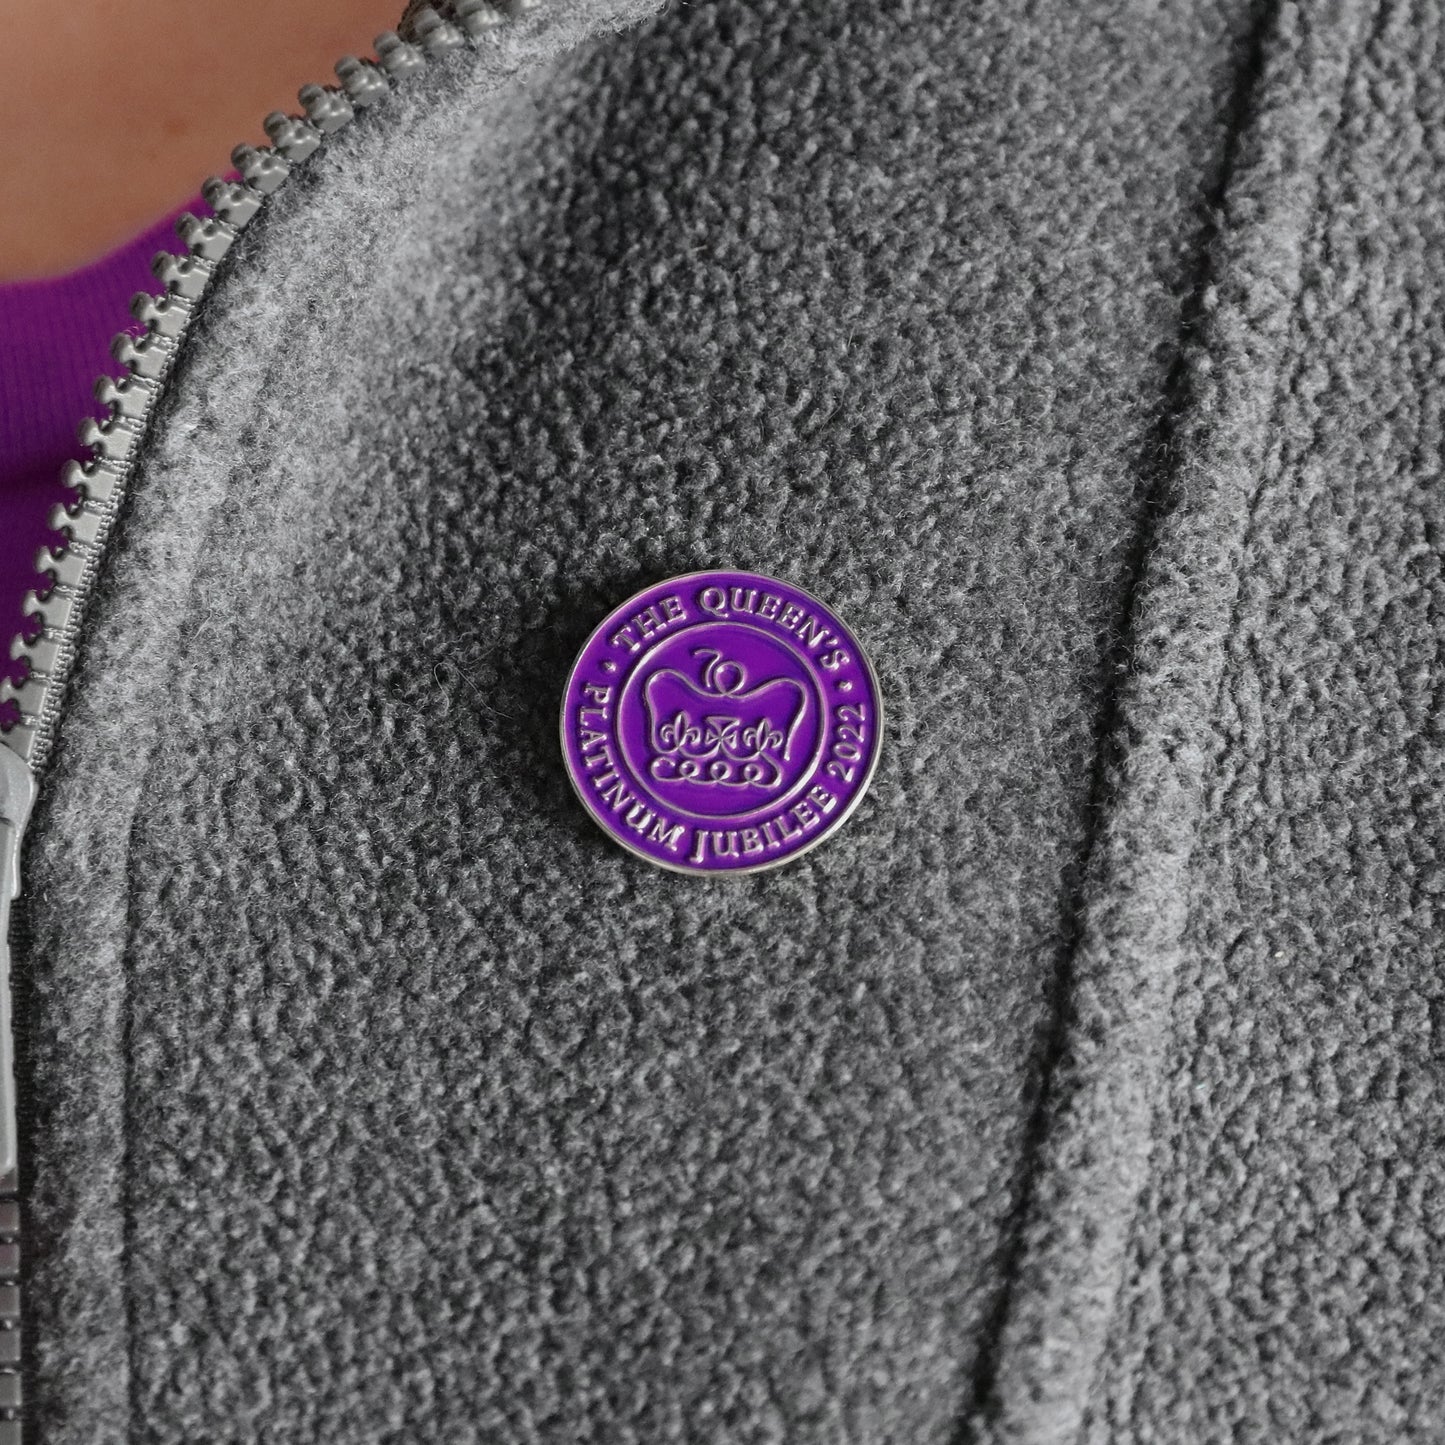 Queen's Platinum Jubilee Pin Badge